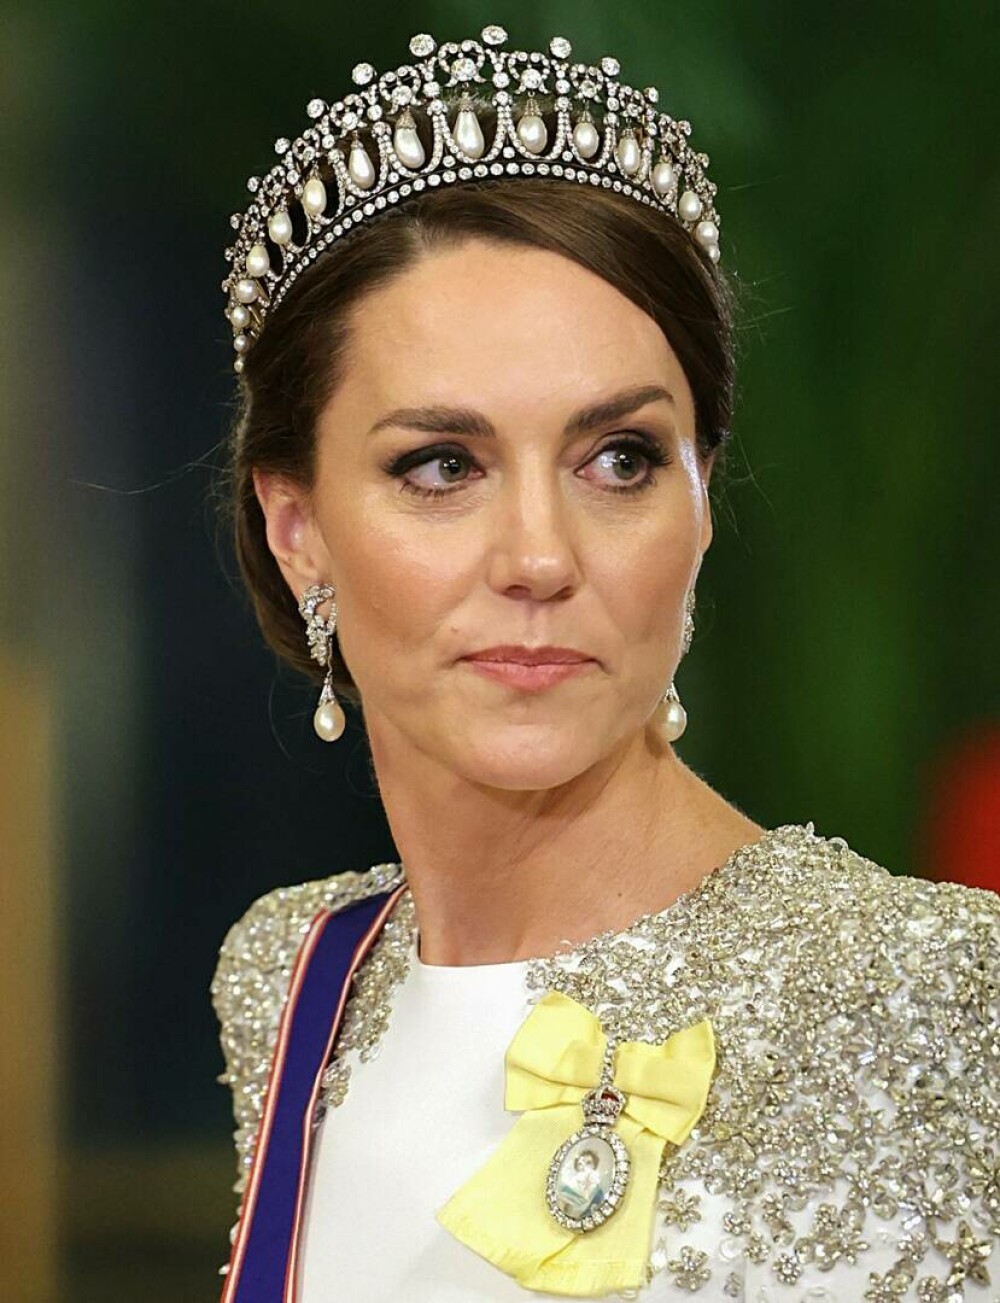 Cât costă o rochie purtată de Kate Middleton? Prințesa de Wales a avut o apariție spectaculoasă la Palatul Buckingham | FOTO - Imaginea 8